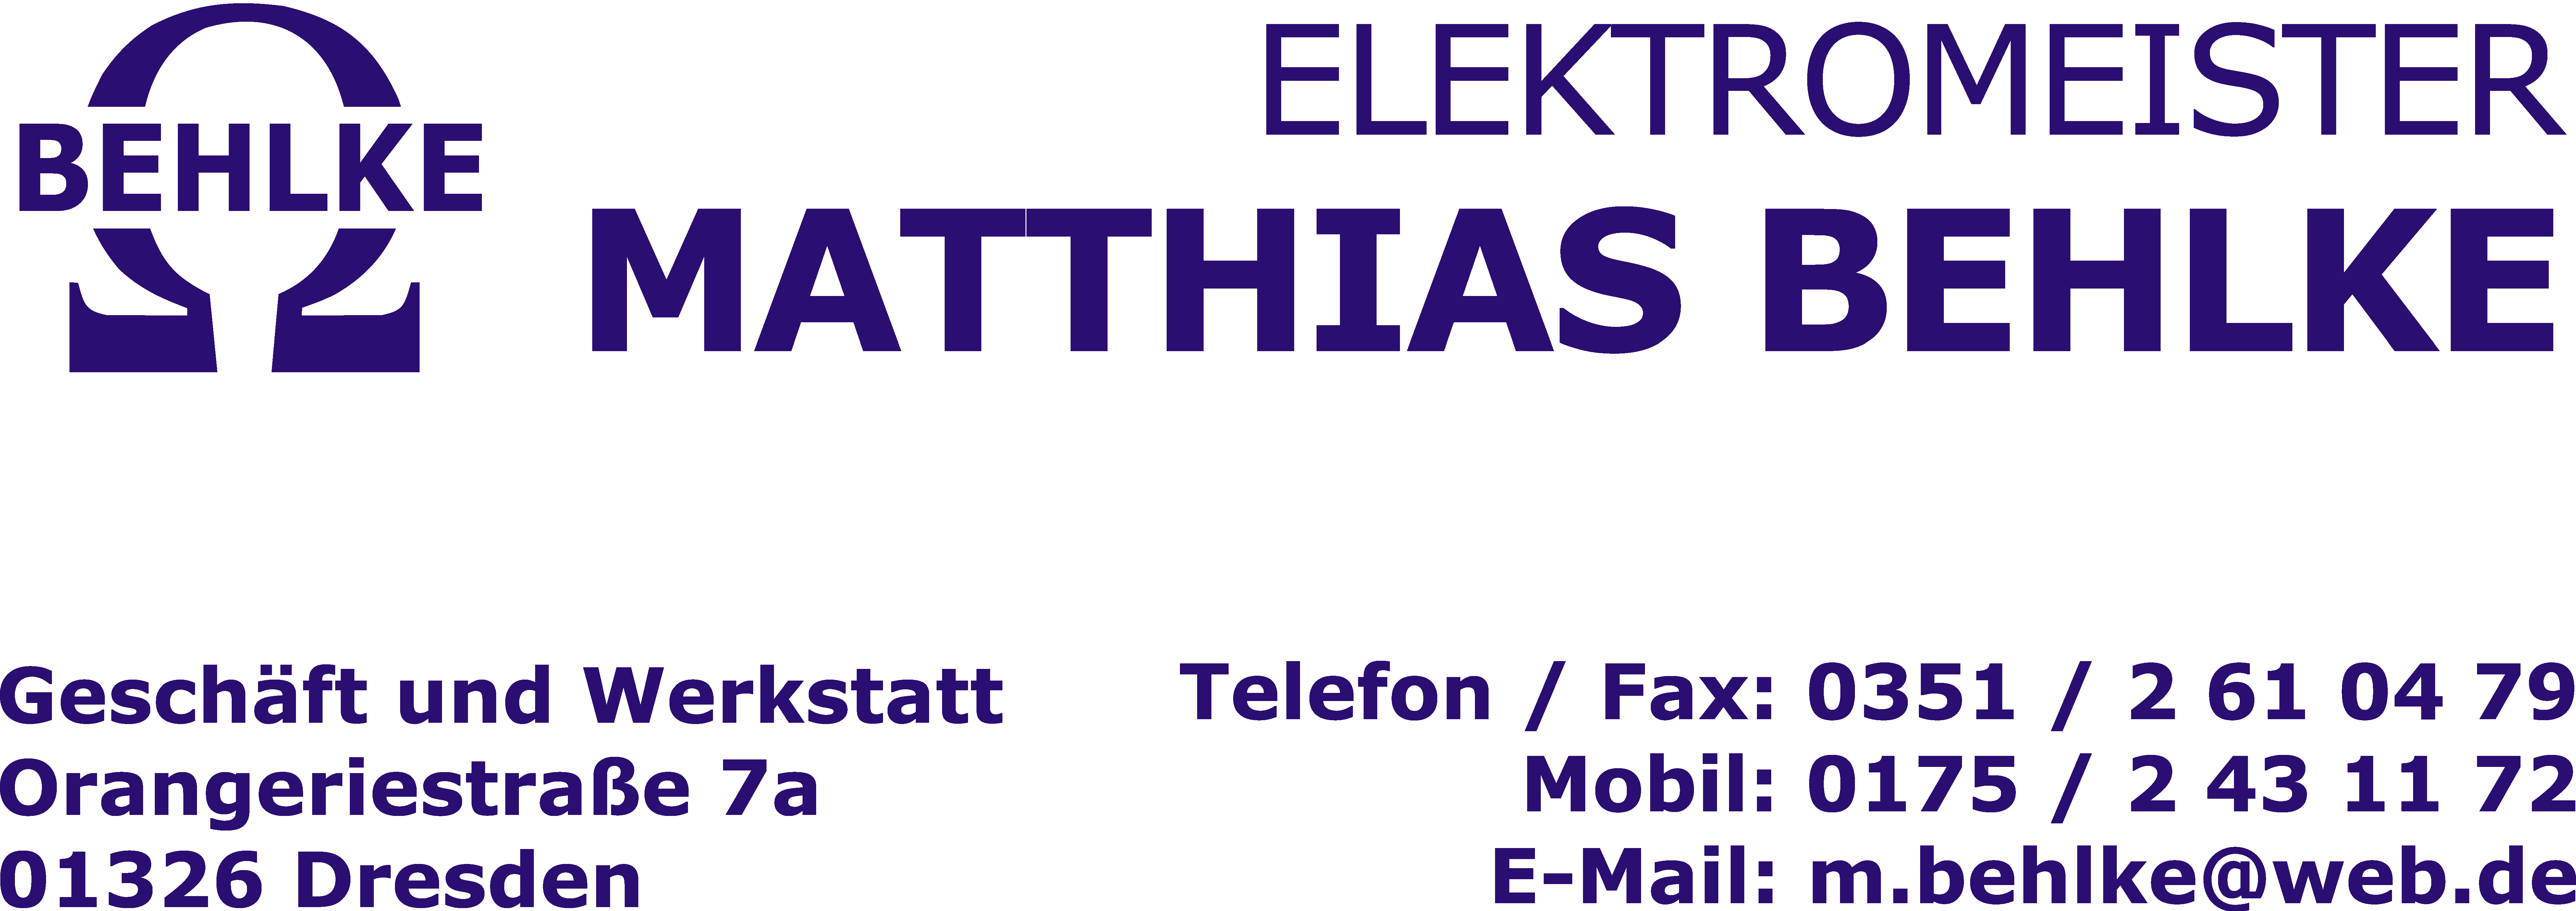 Elektromeister Matthias Behlke